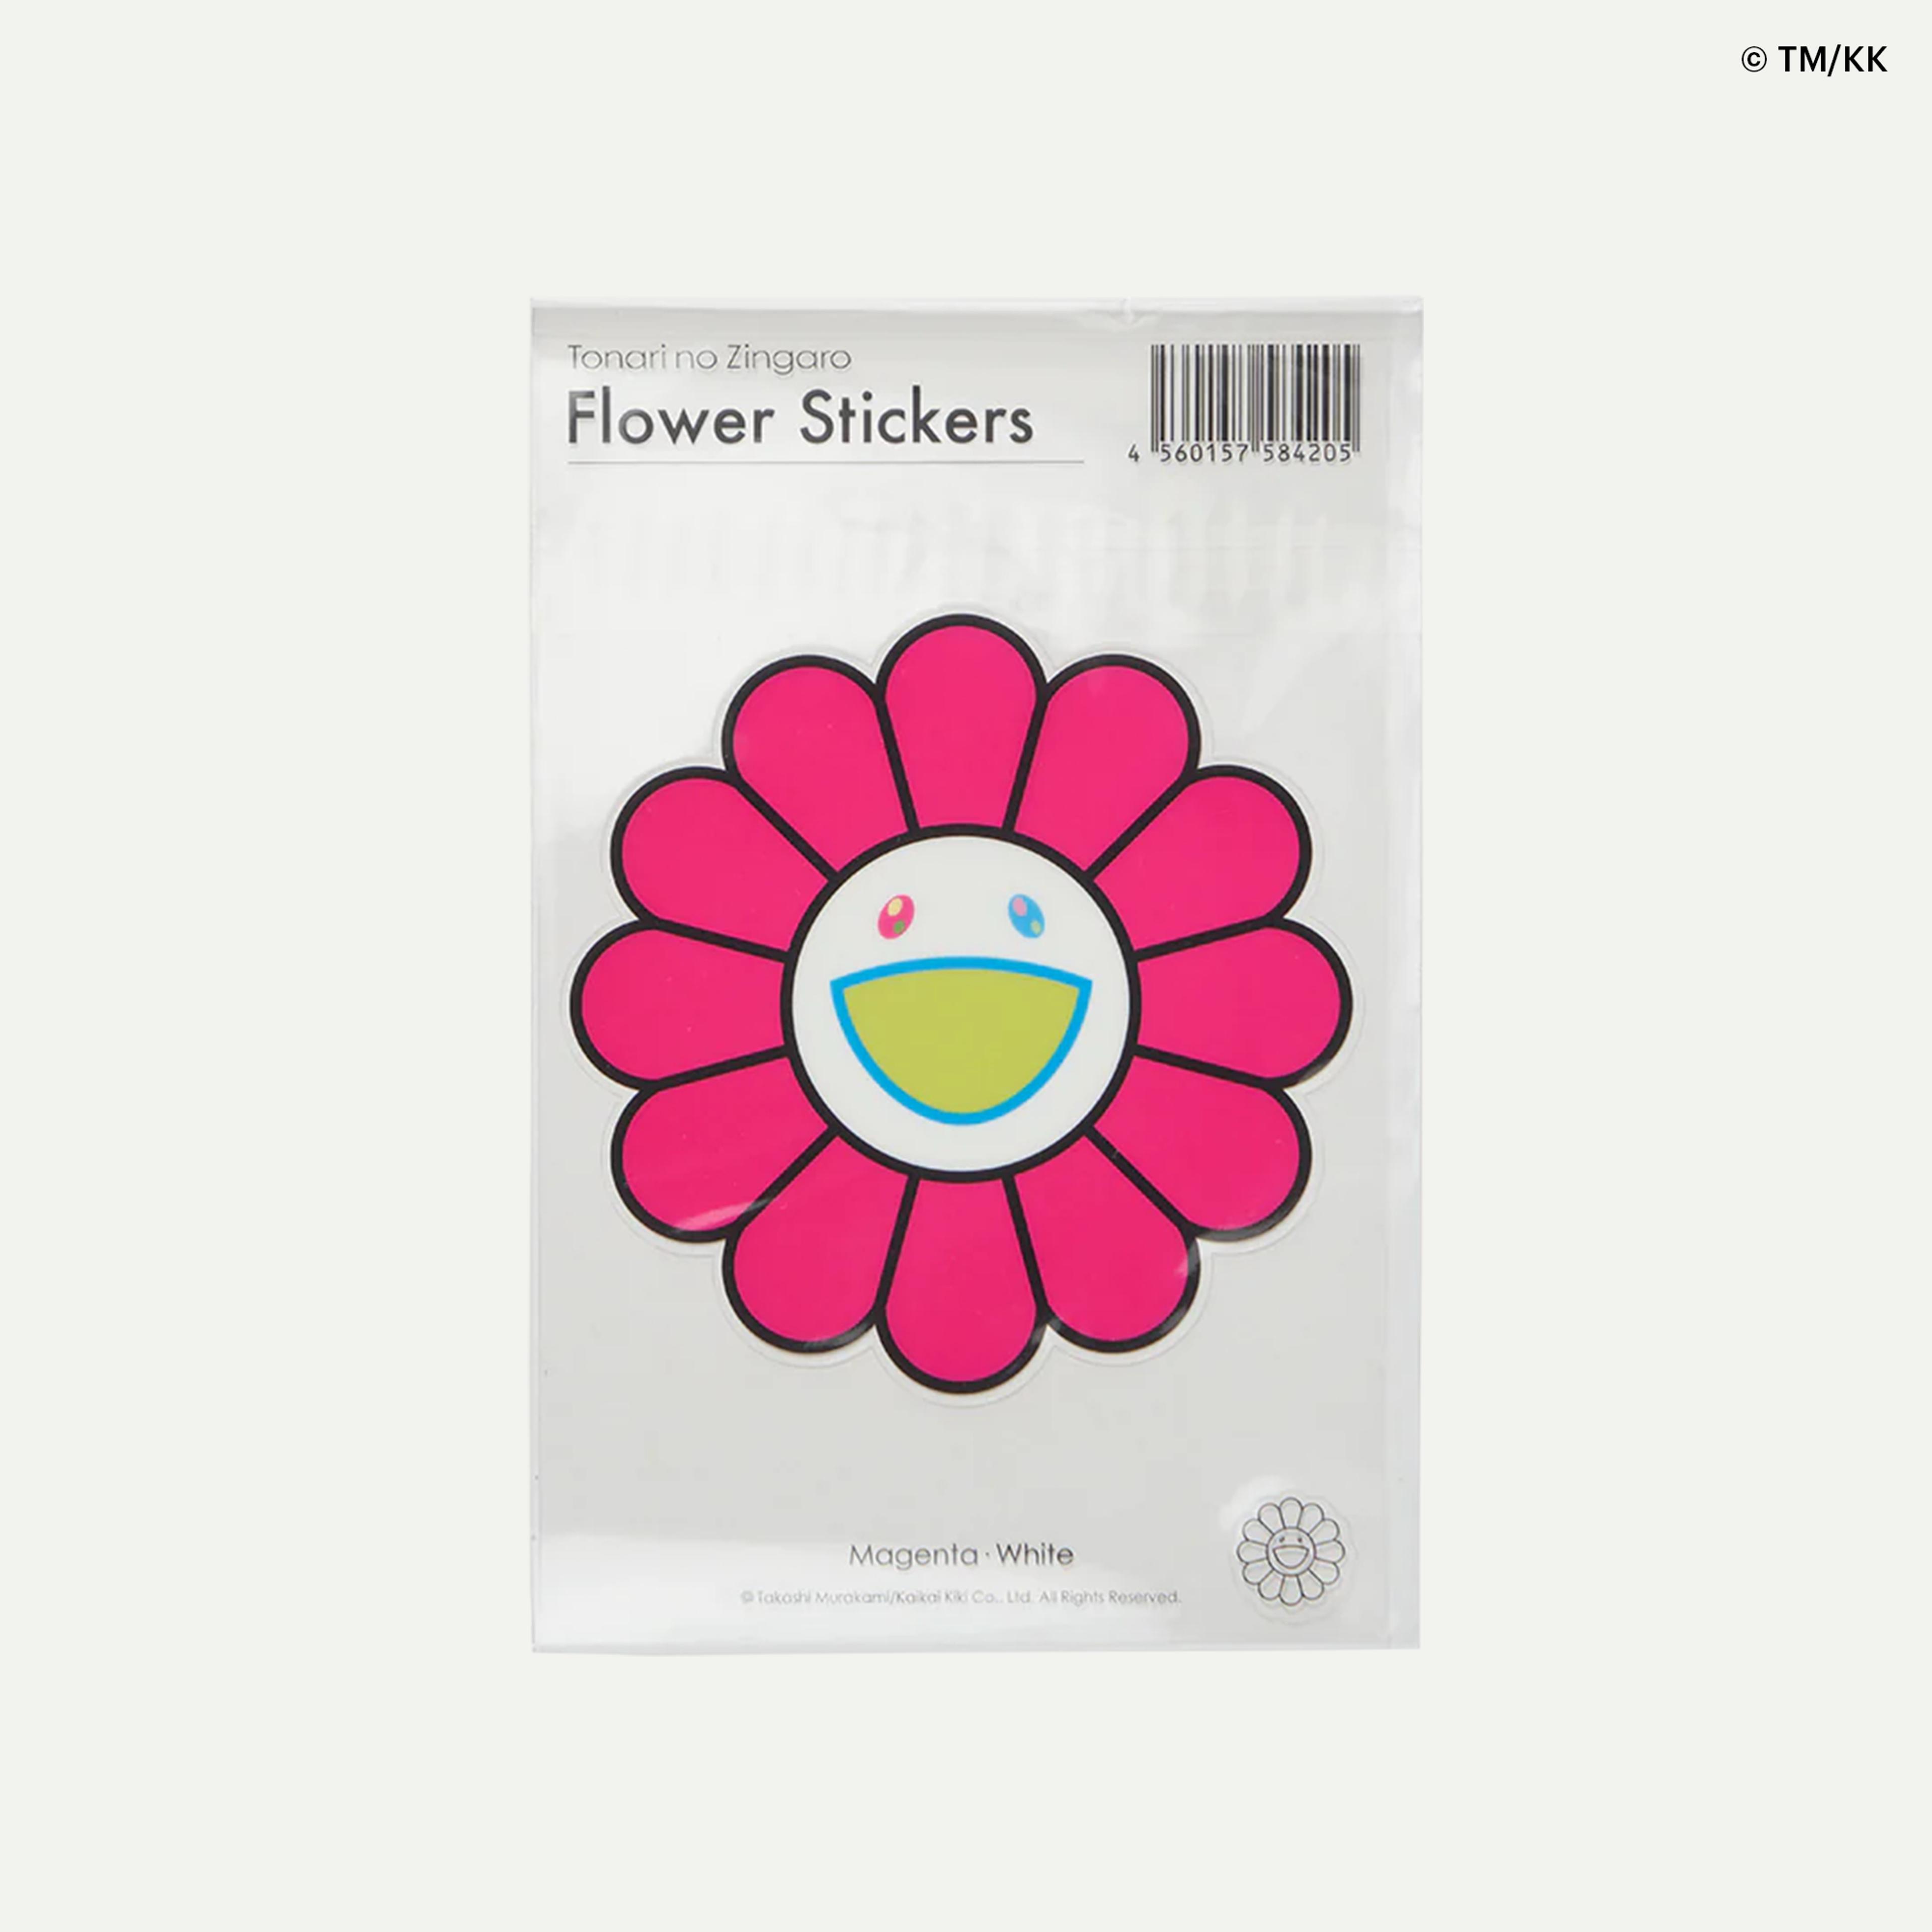 ©TM/KK Flower Stickers / Magenta × White